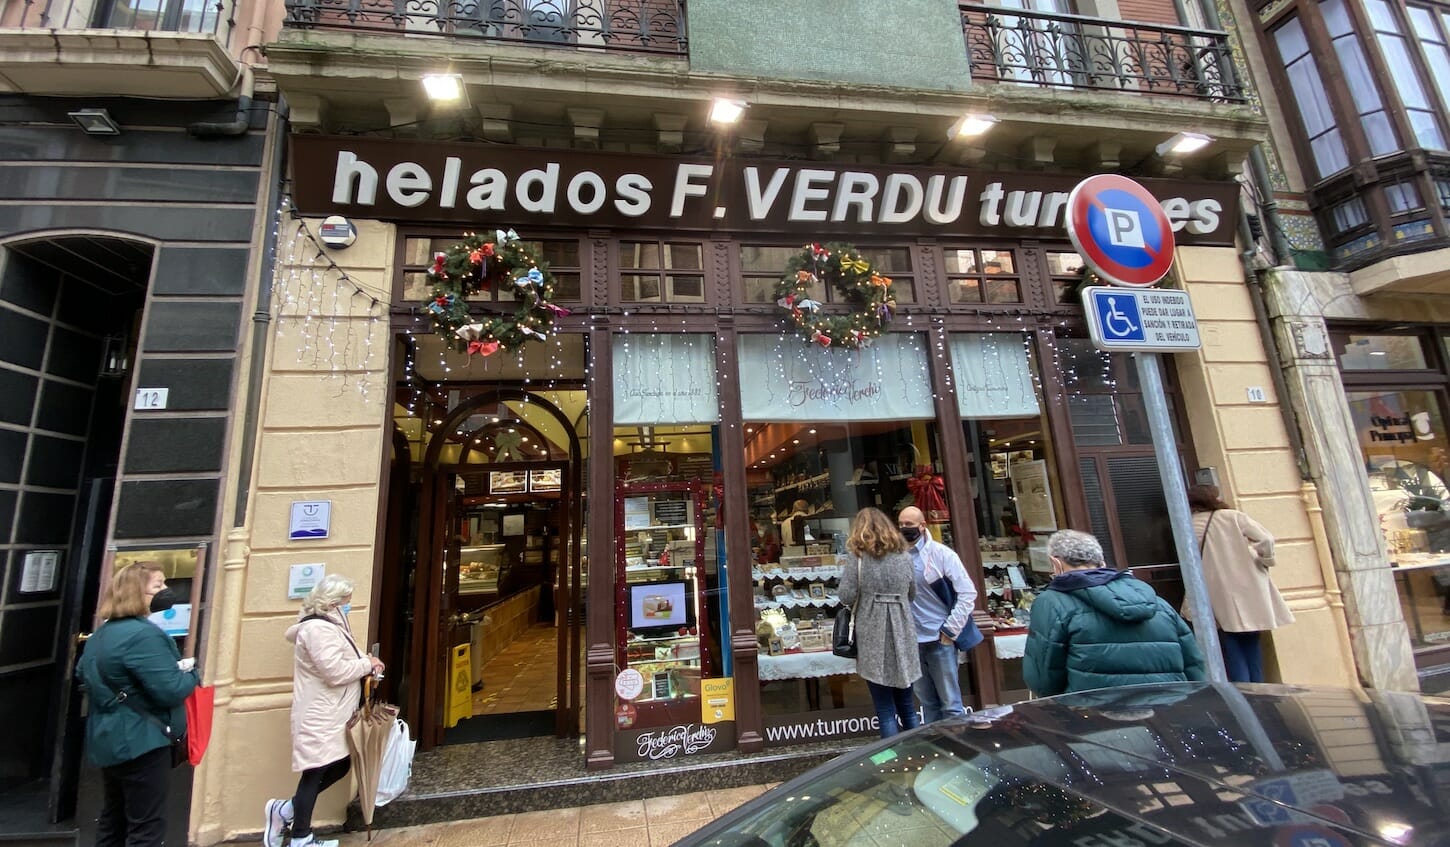 Fachada de Verdú en Gijón